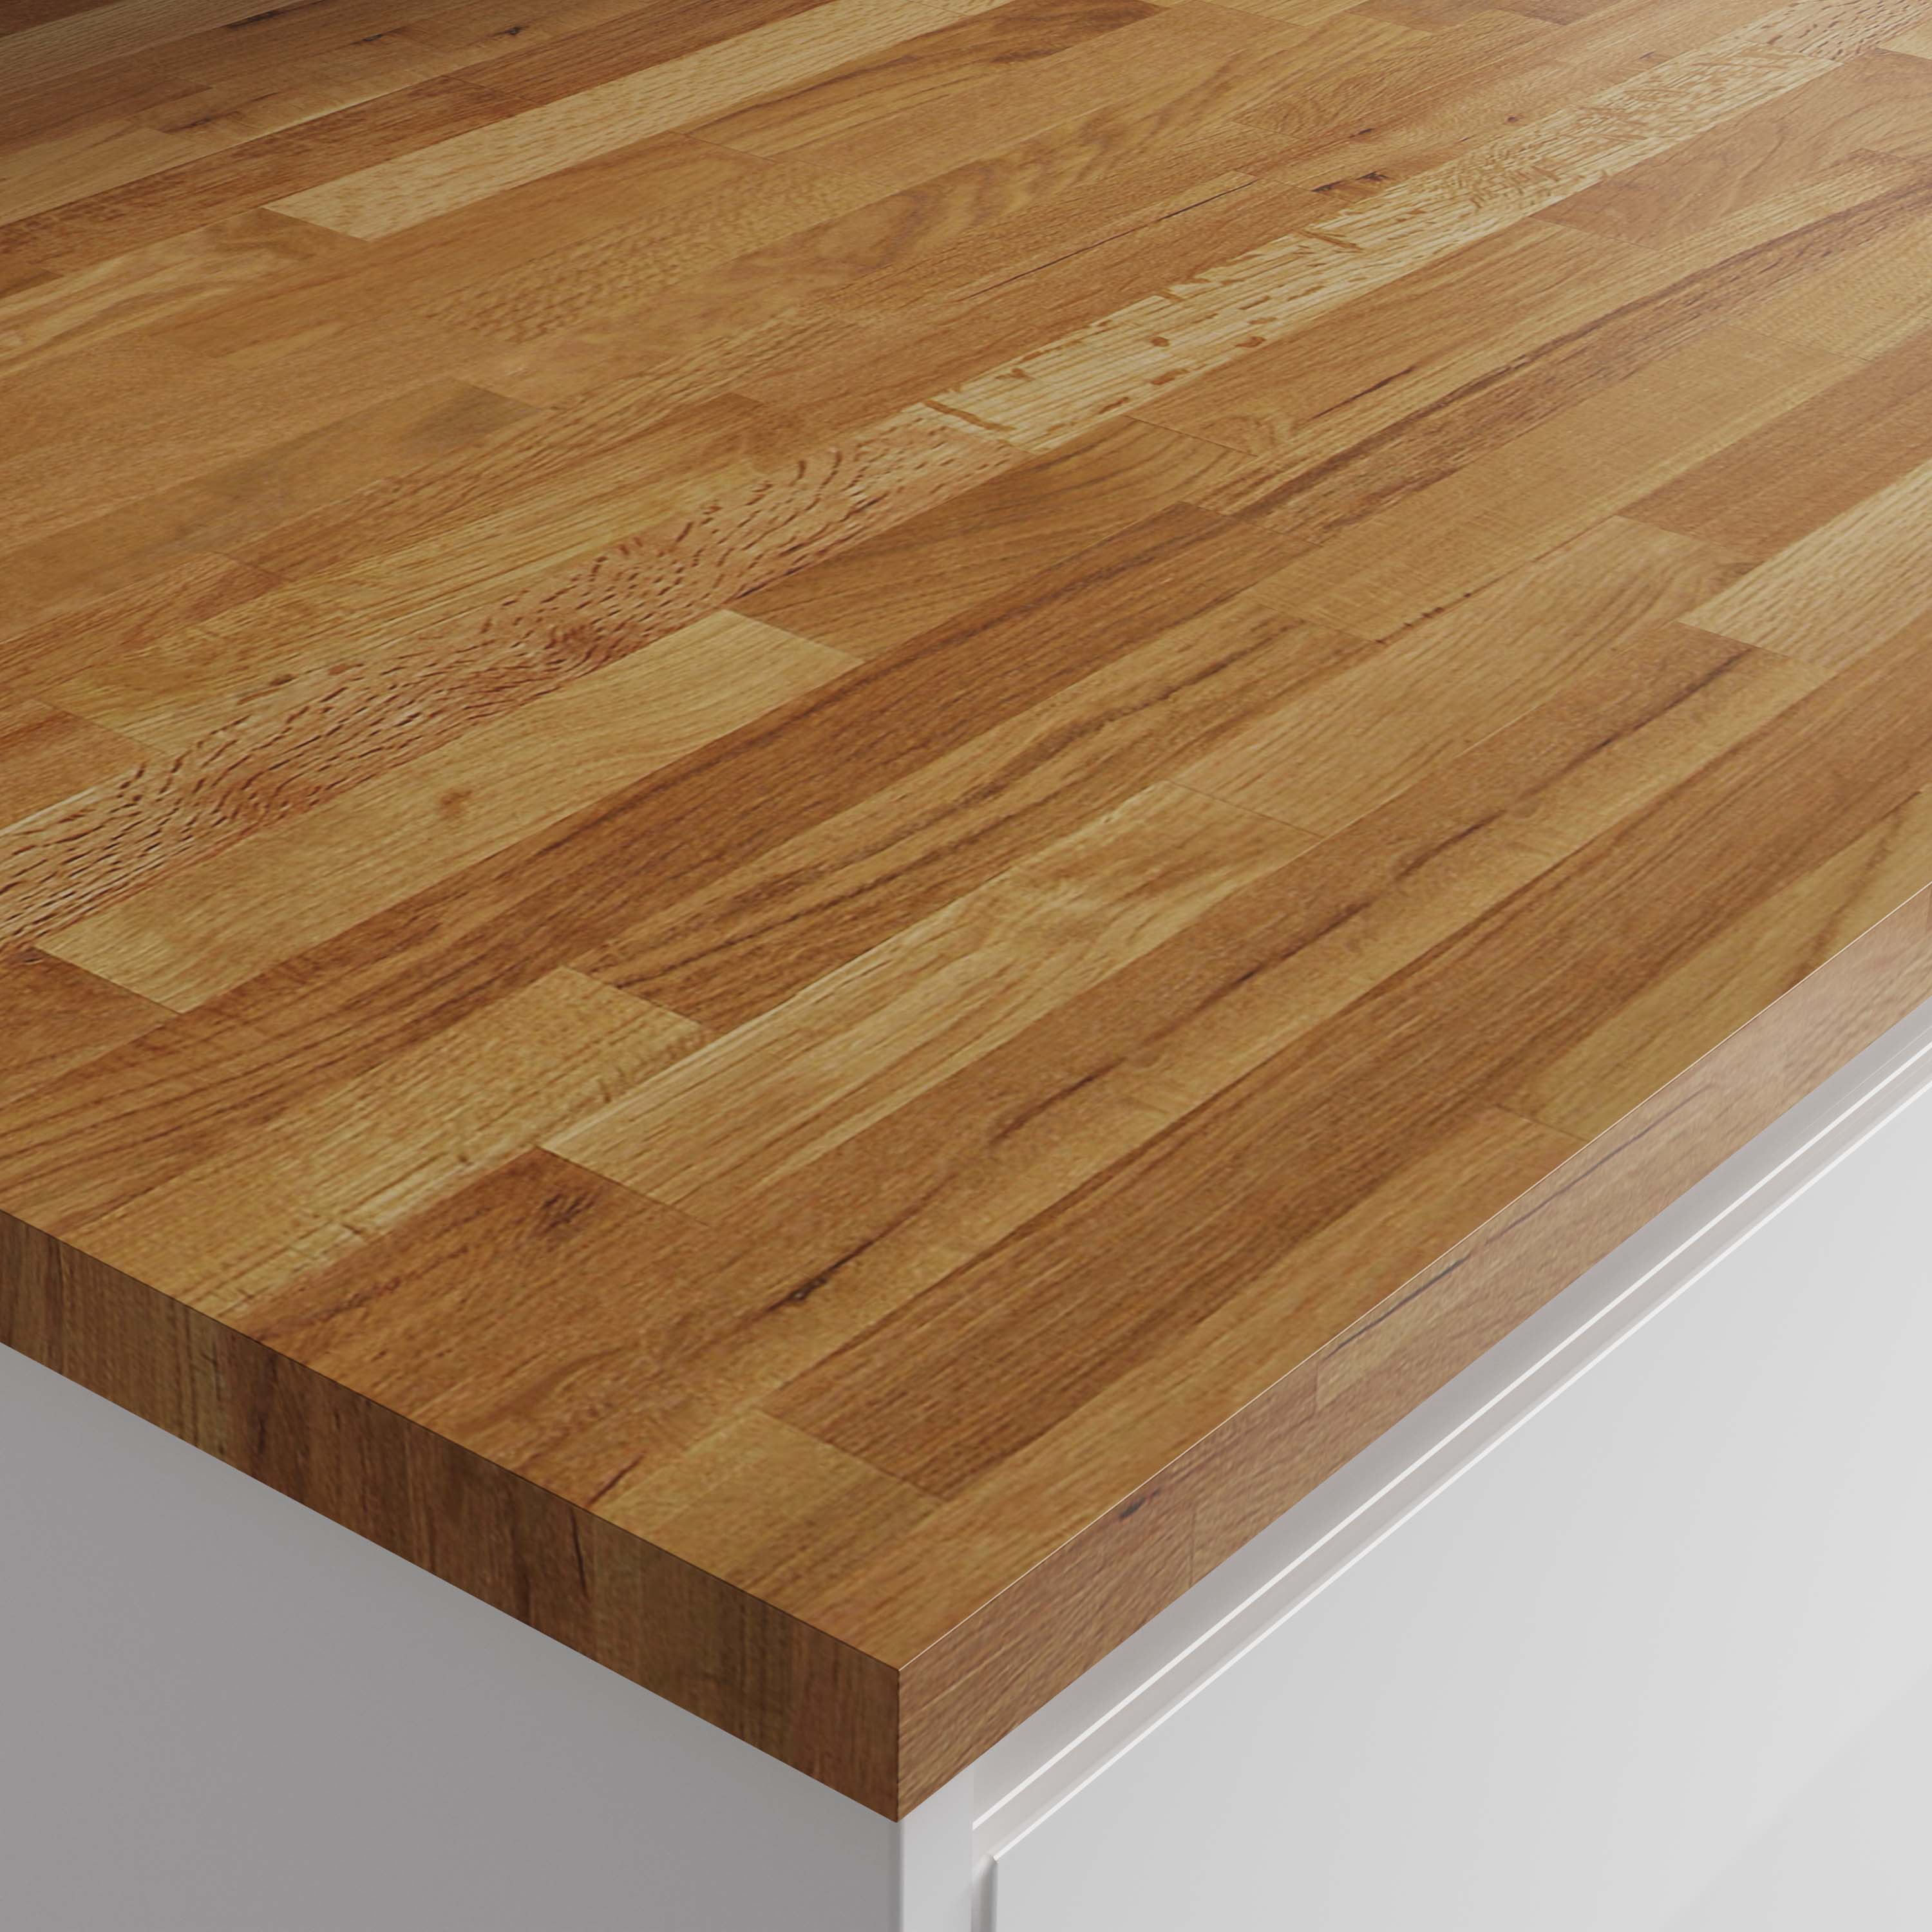 Image of Wickes Solid Wood Worktop - Rustic Oak 600 x 27mm x 3m